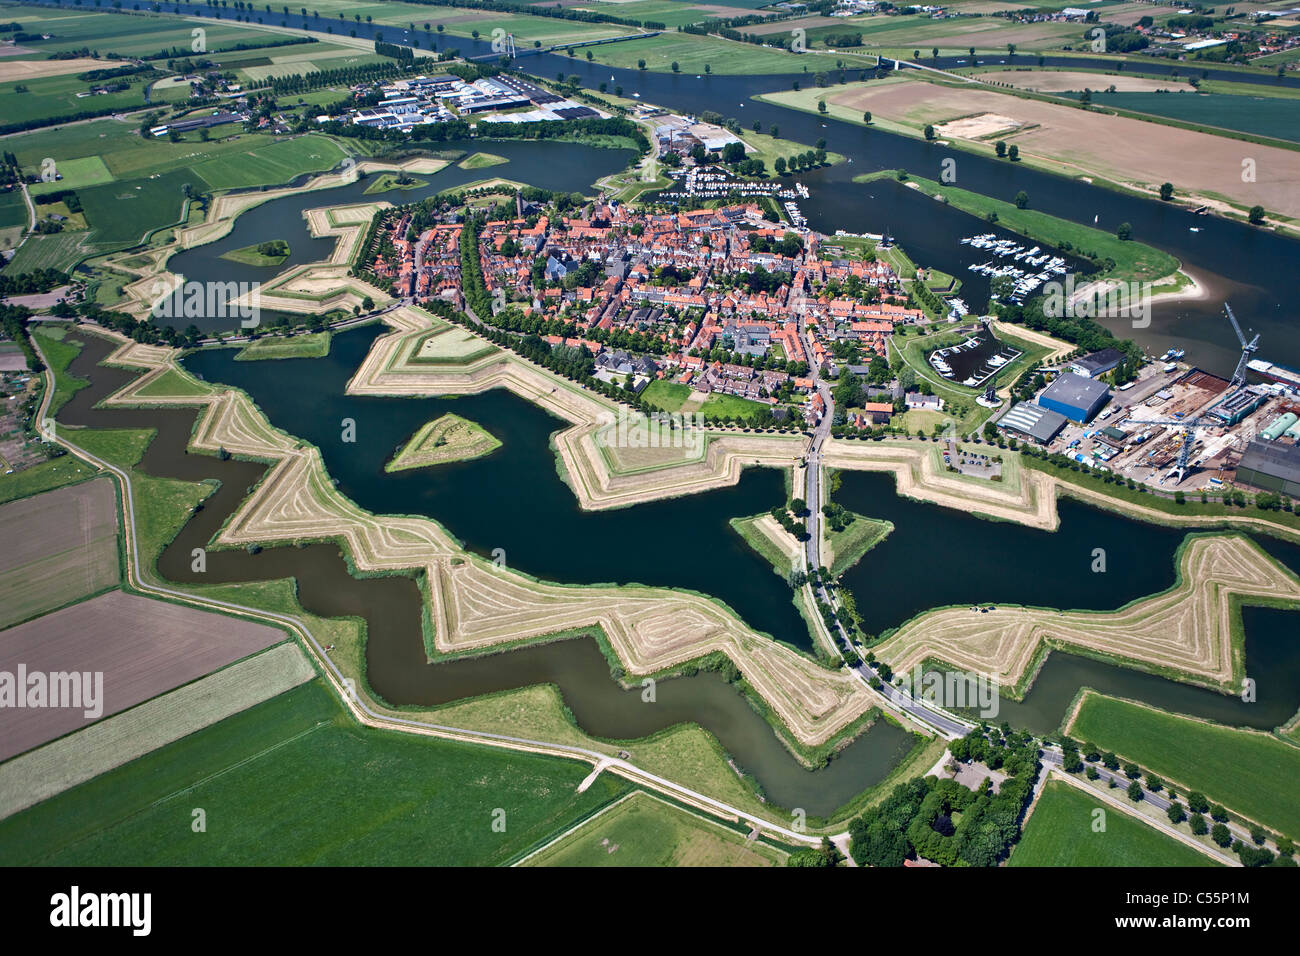 Die Niederlande, die befestigte, sternförmige Stadt Pulheim in der Nähe der Maas, Antenne. Stockfoto